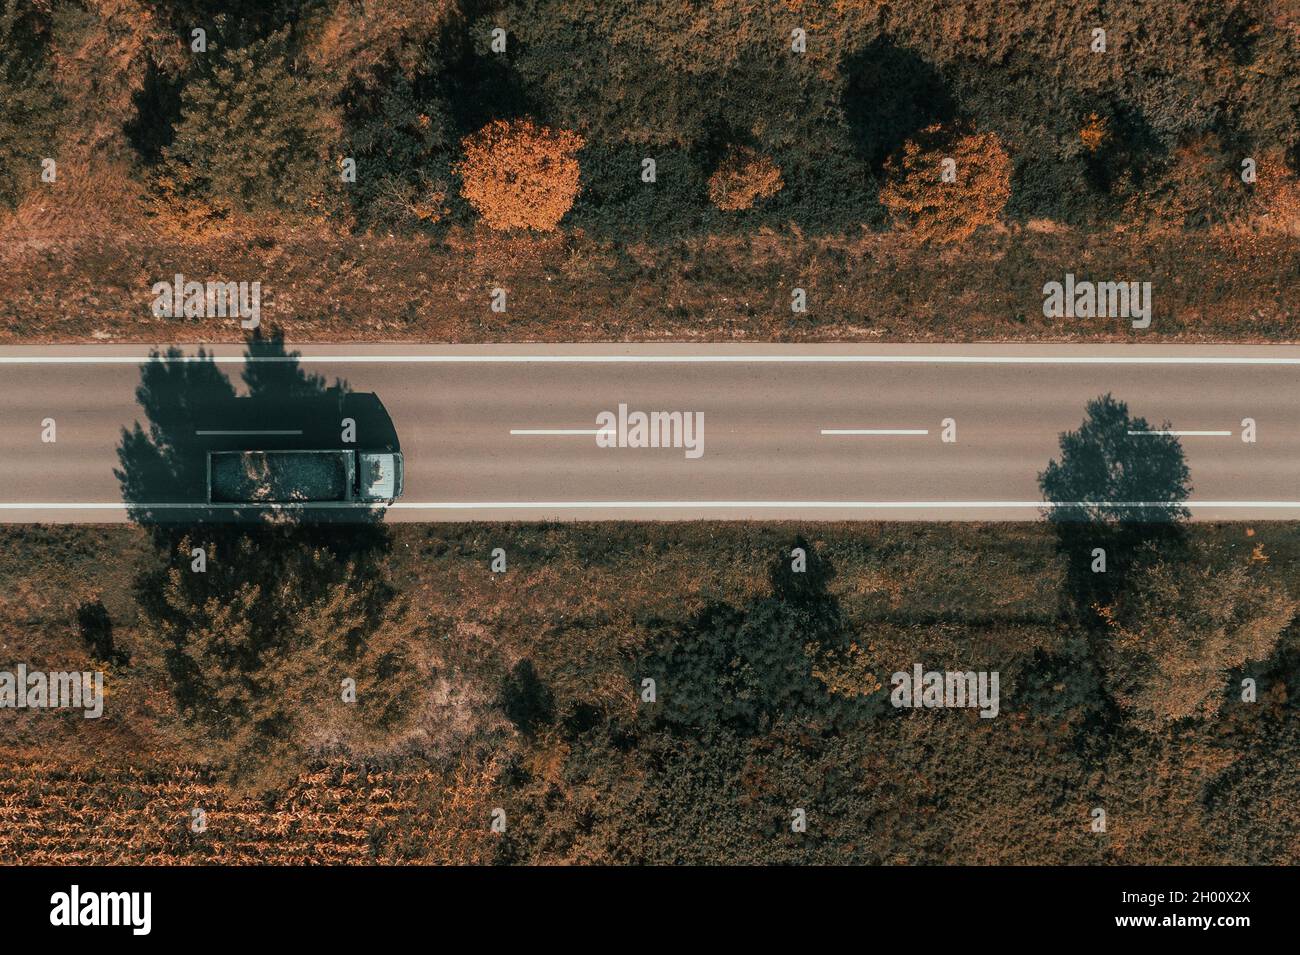 Luftaufnahme eines LKW mit Wagen voller Kiesel, Drone-Fotografie des Fahrzeugs auf der Straße von oben nach unten Stockfoto